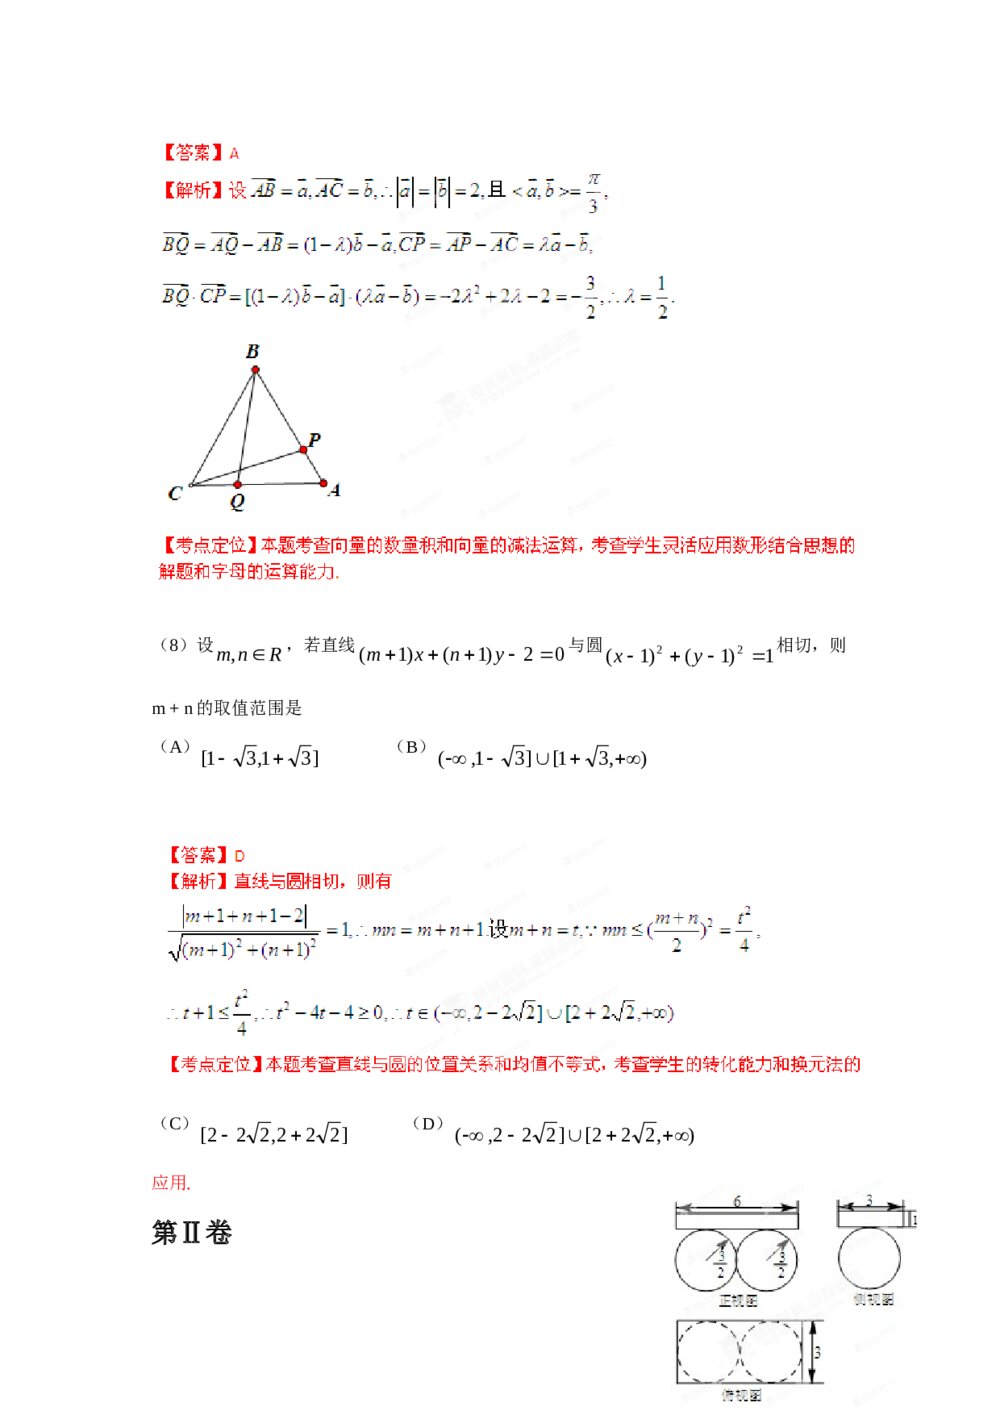 2012年天津高考(理科)数学试题试卷+答案解析8